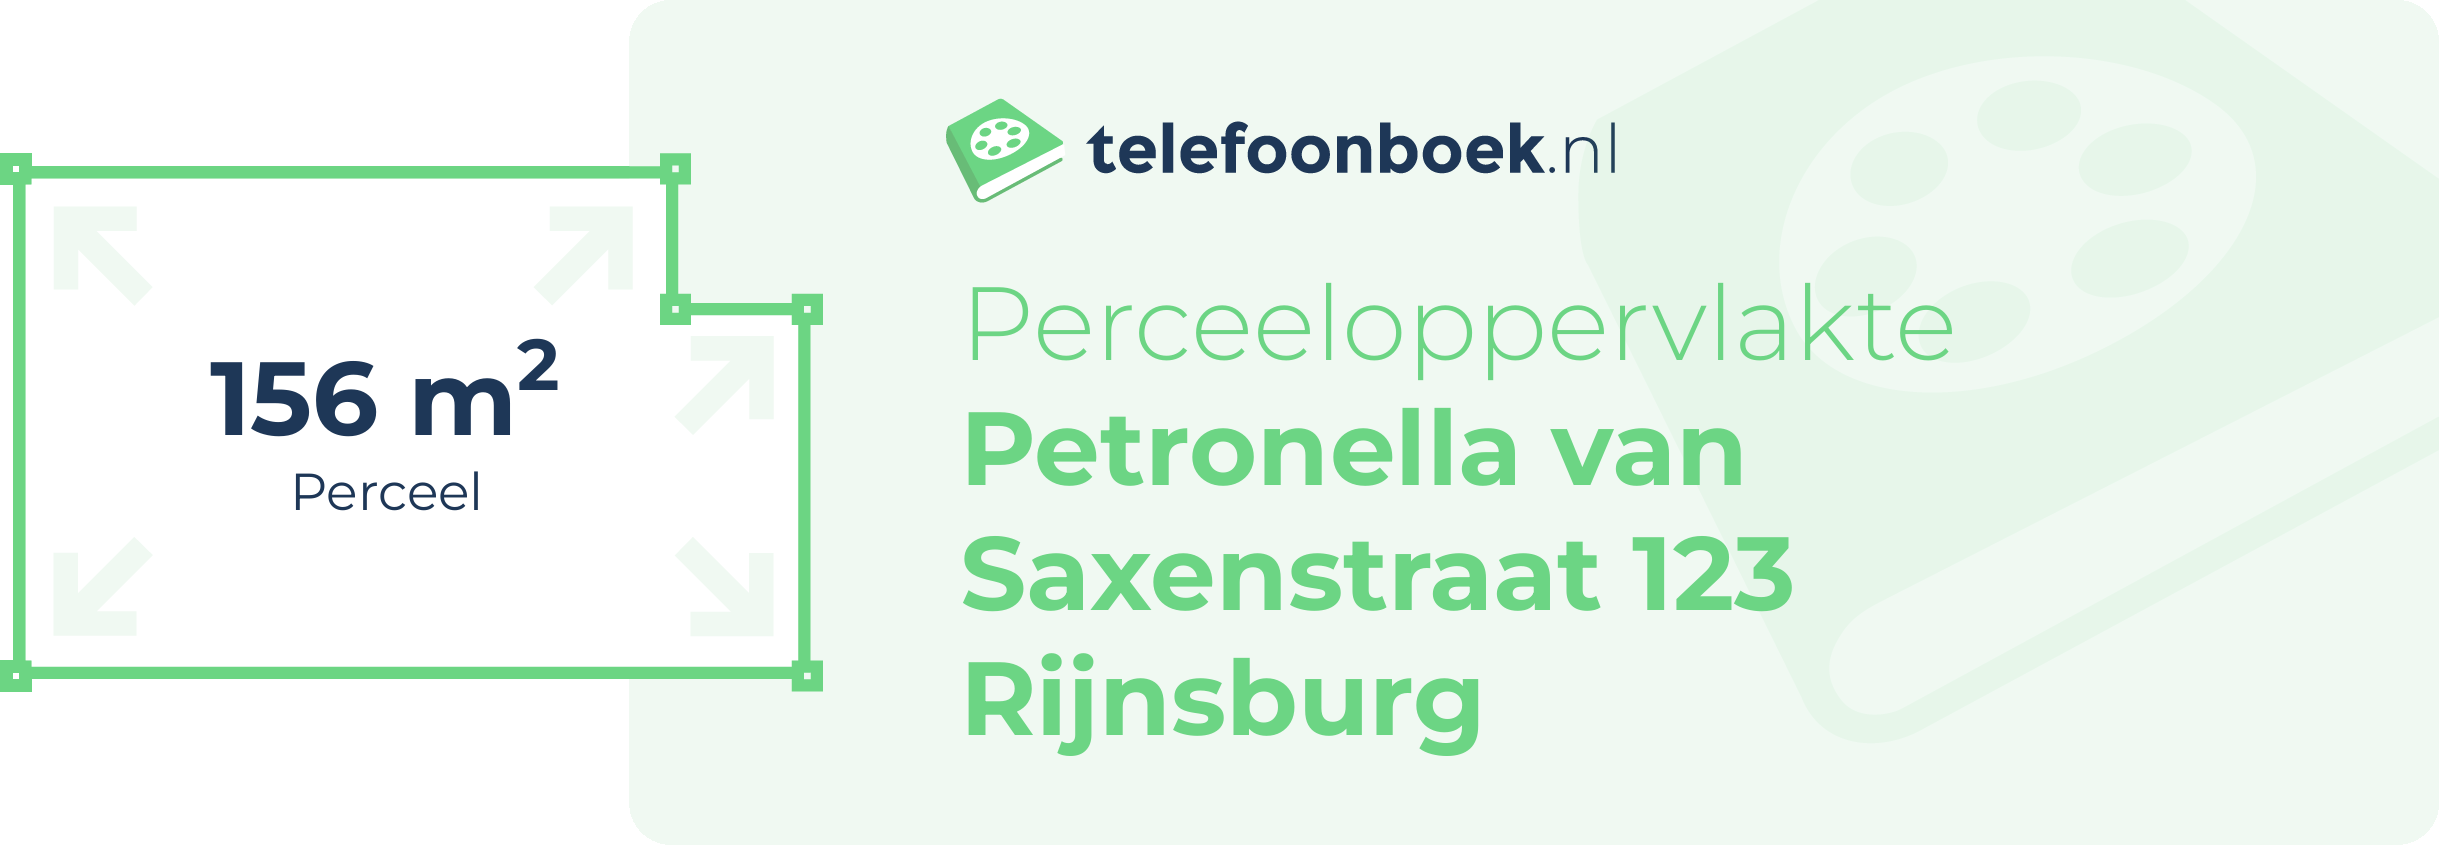 Perceeloppervlakte Petronella Van Saxenstraat 123 Rijnsburg